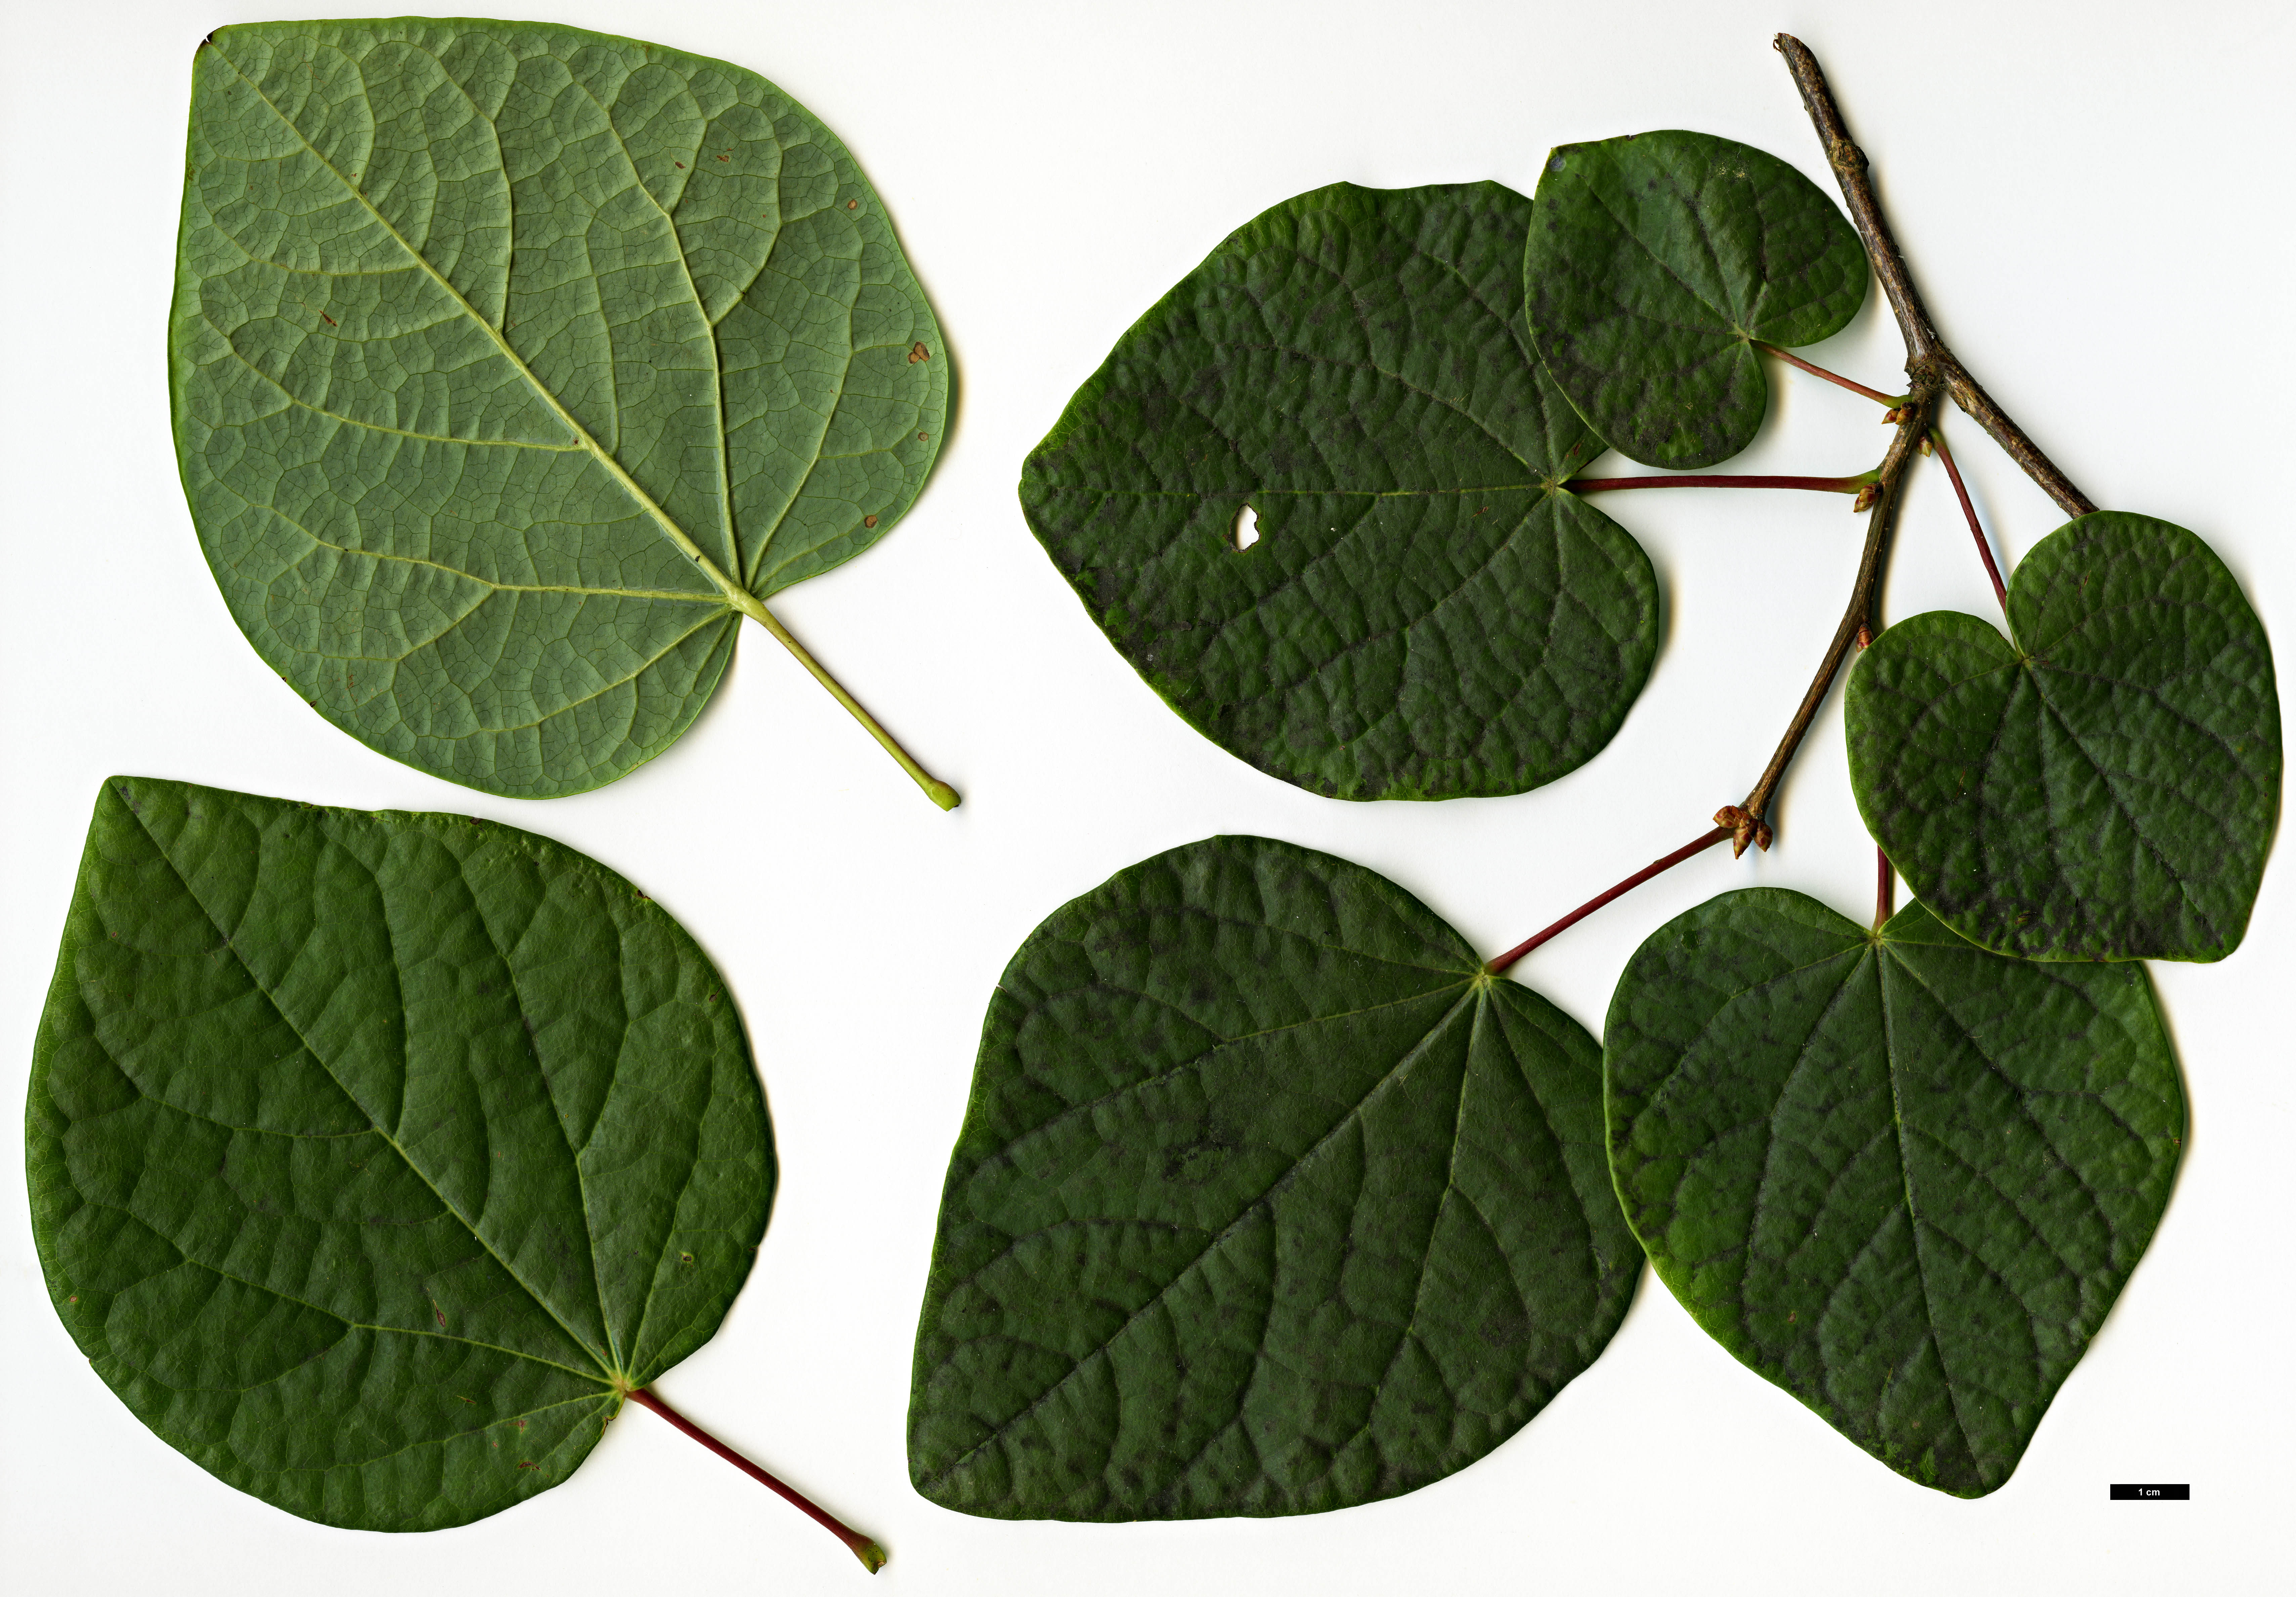 High resolution image: Family: Hamamelidaceae - Genus: Disanthus - Taxon: cercidifolius